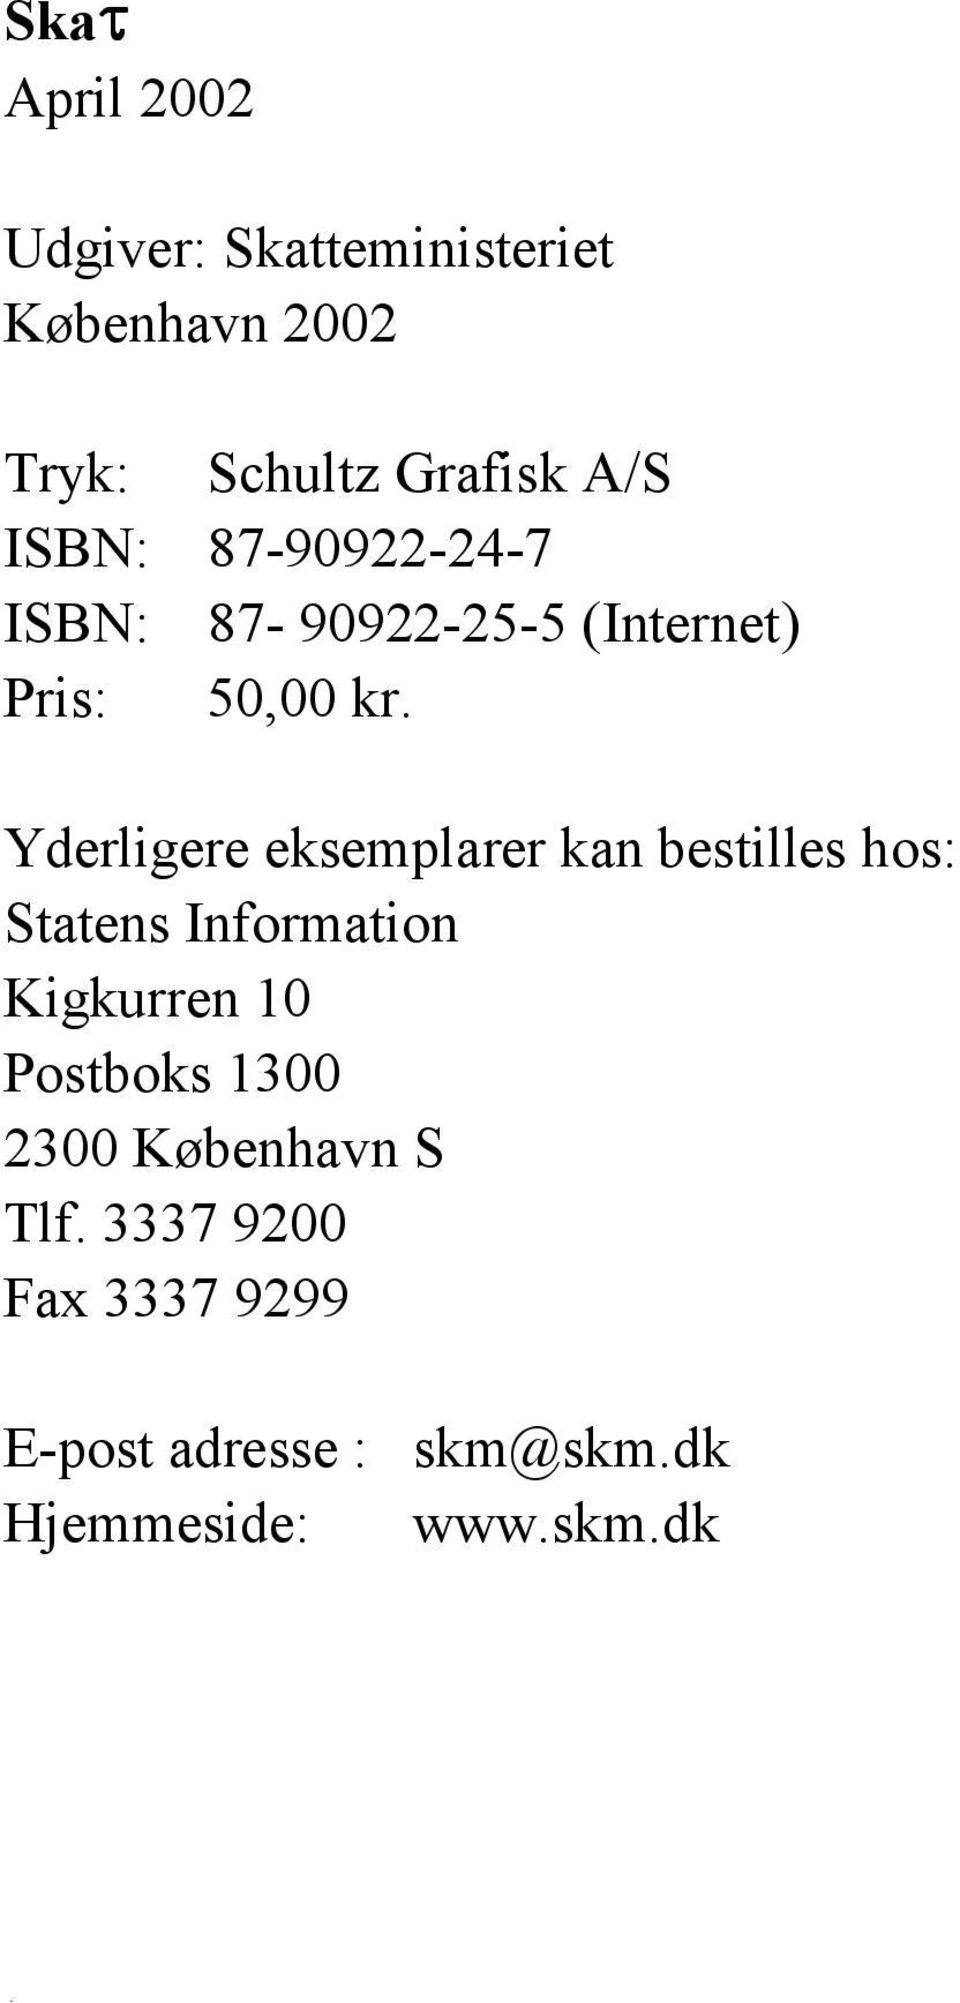 Yderligere eksemplarer kan bestilles hos: Statens Information Kigkurren 10 Postboks